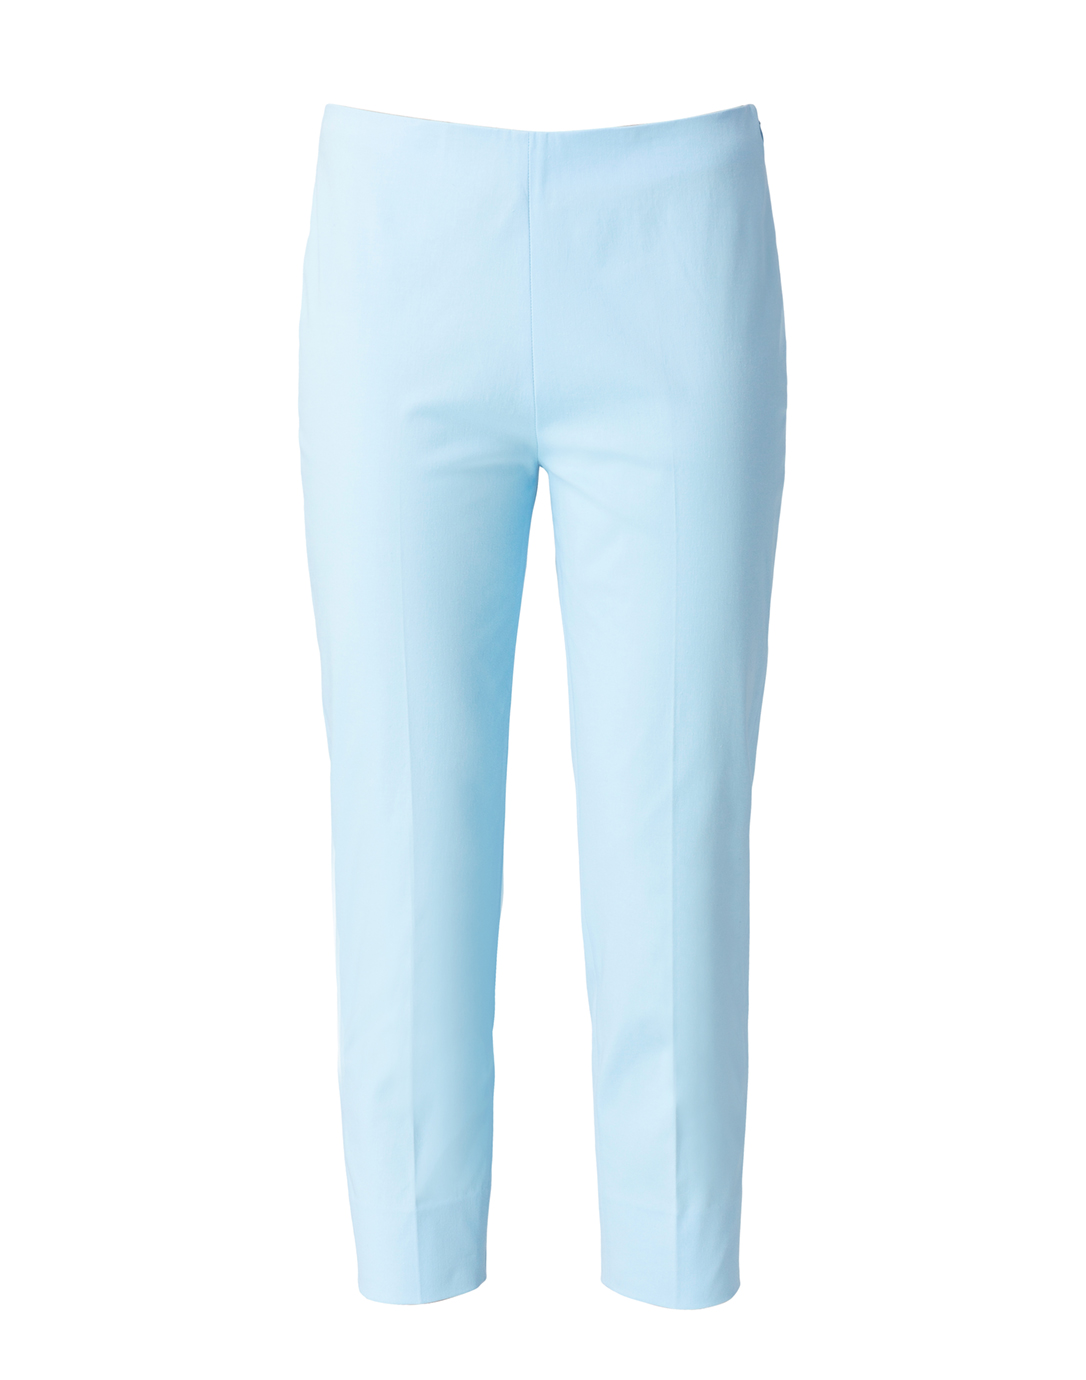 blue capri pants